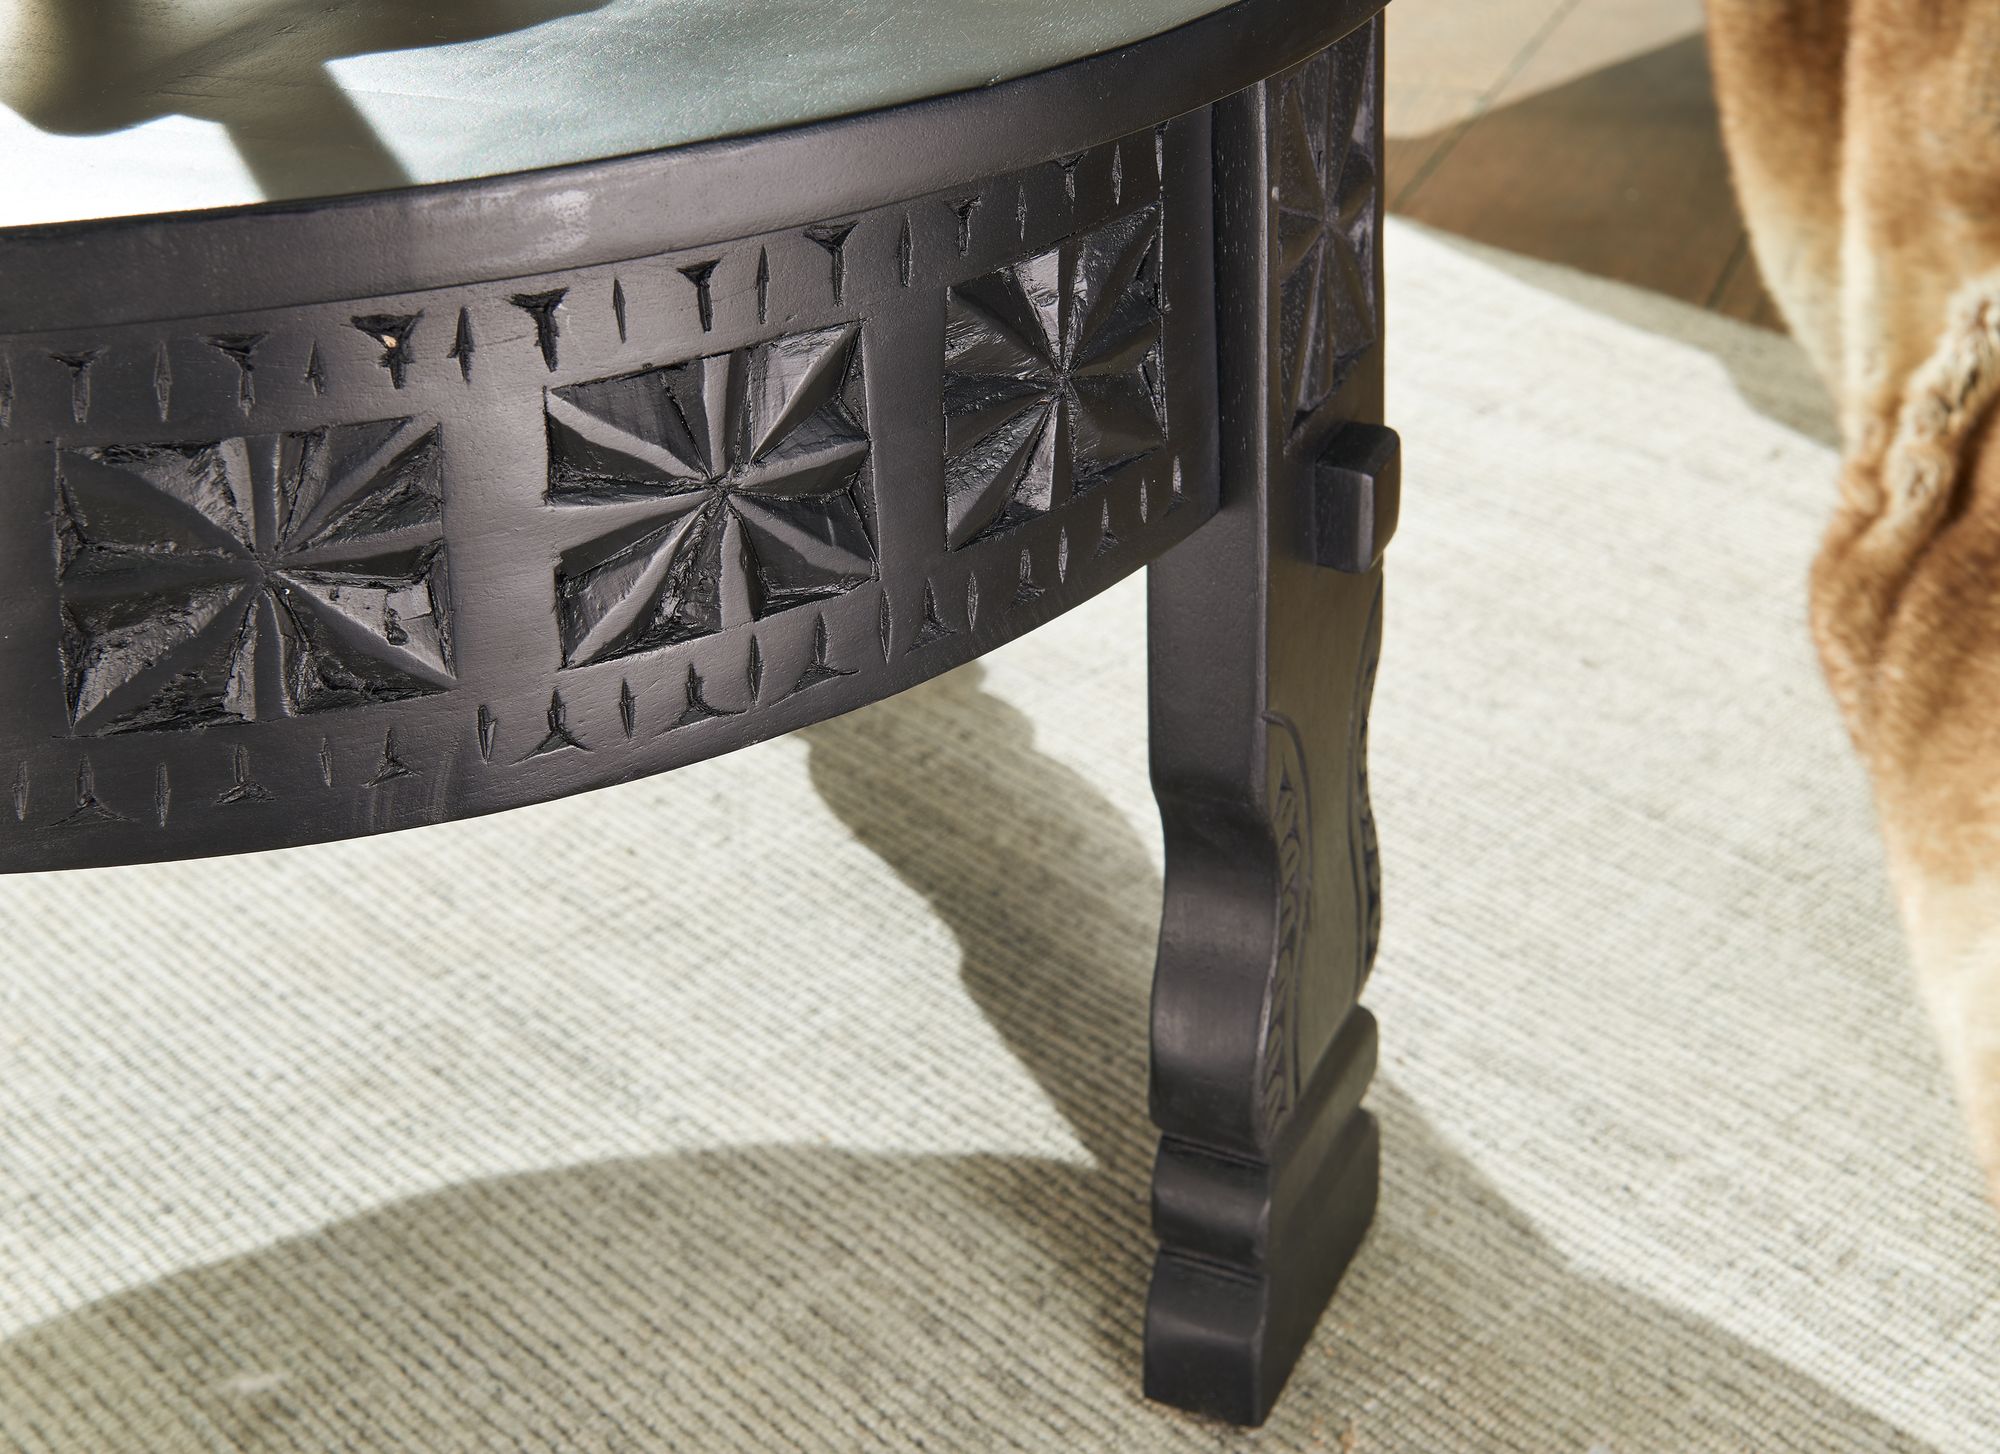 orientaalse salontafel zwart 80 cm